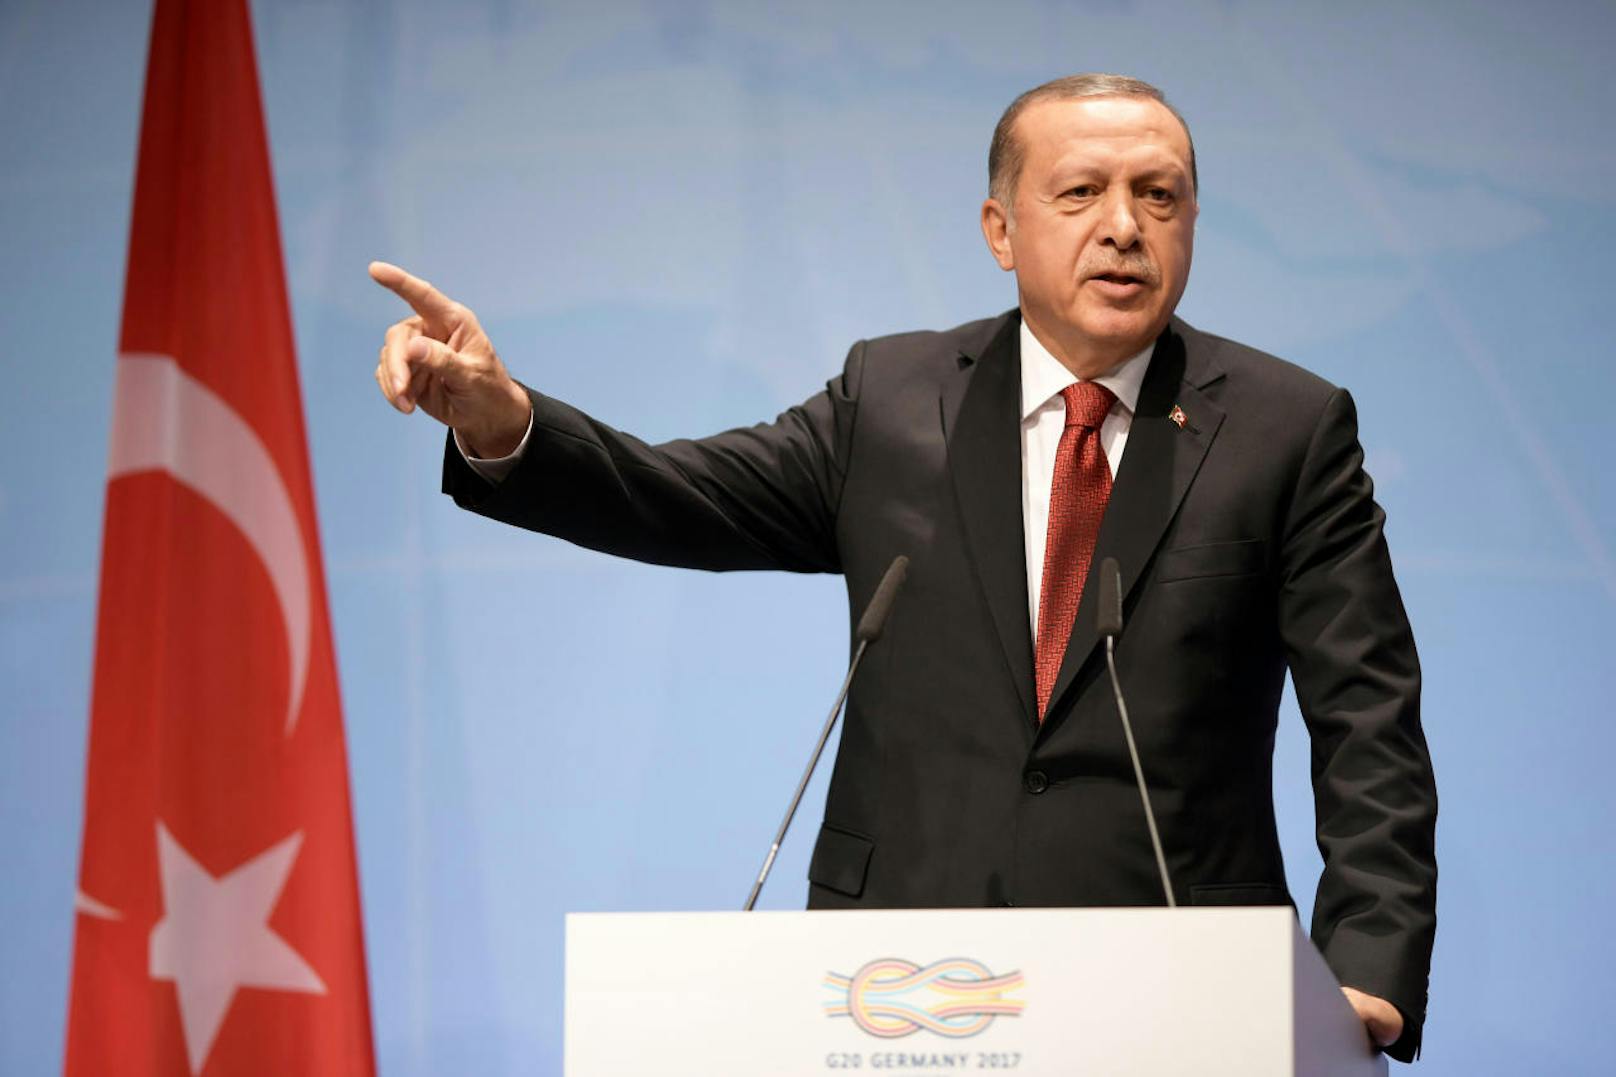 Der türkische Präsident Recep Tayyip Erdogan bei seiner Abschlussrede am G20-Gipfel in Hamburg.